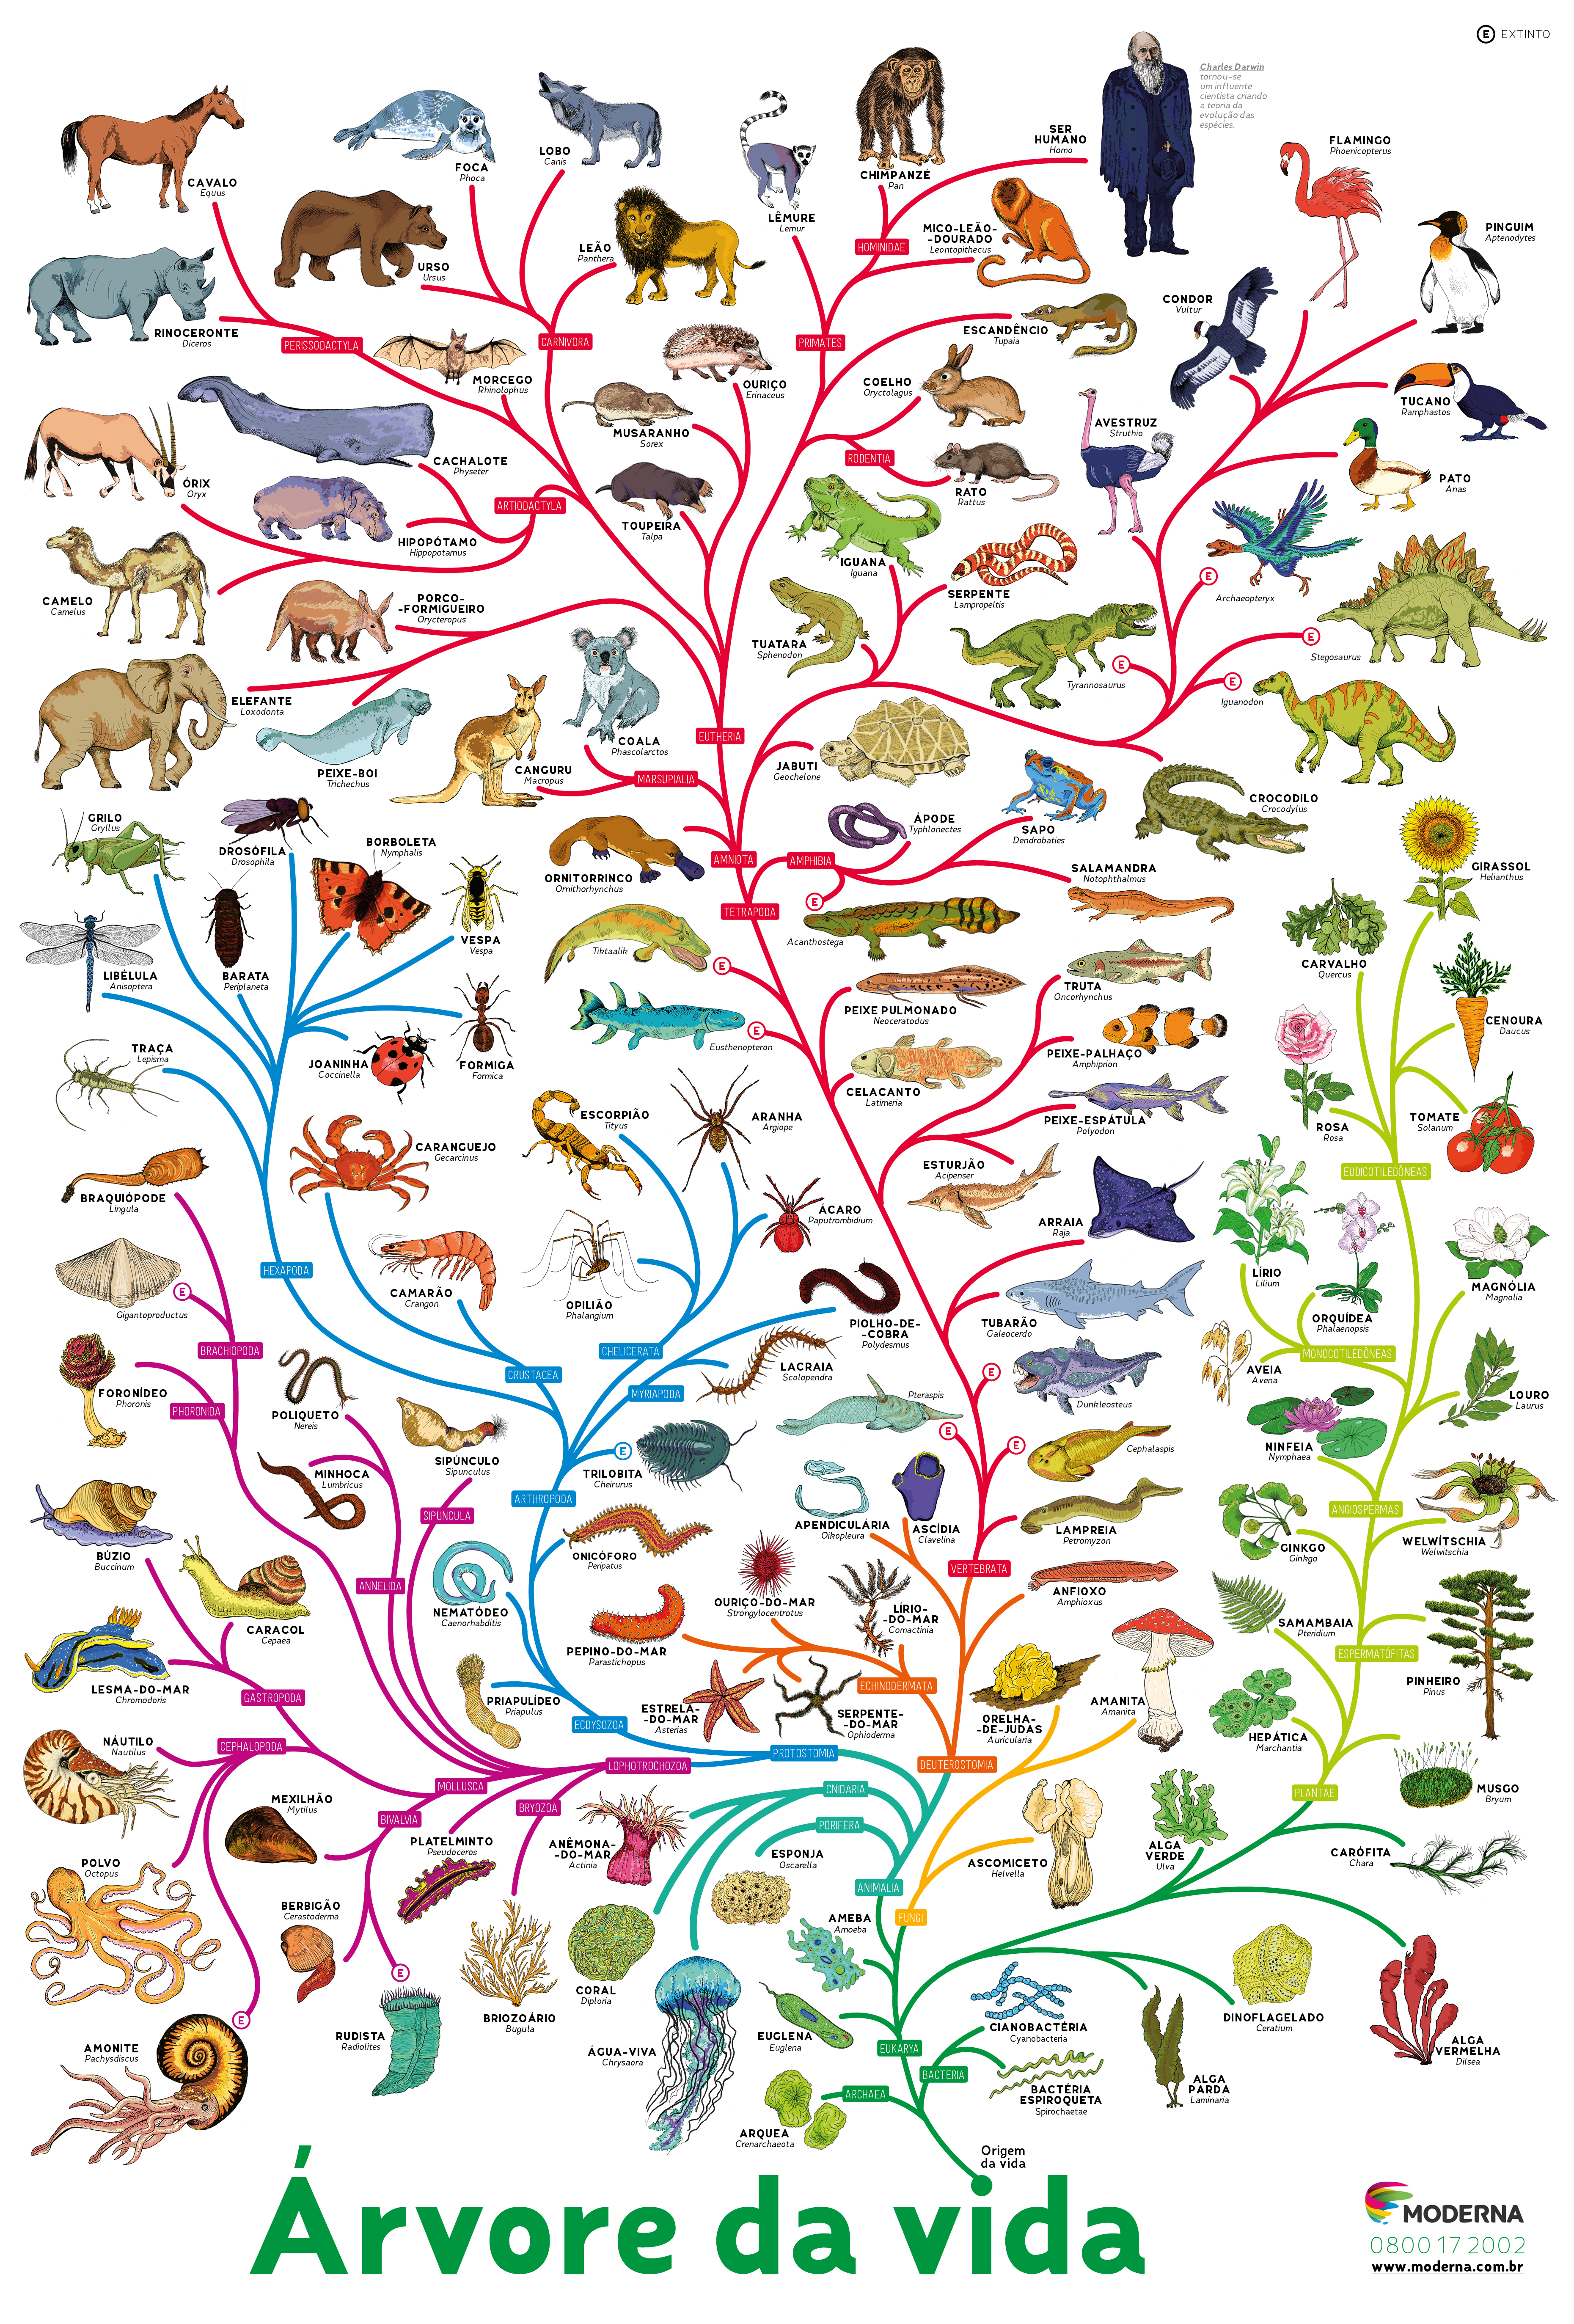 Эволюция древа 181. Эволюционное дерево жизни Чарльза Дарвина. Эволюционное Древо развития животных. Филогенетическое дерево эволюции.